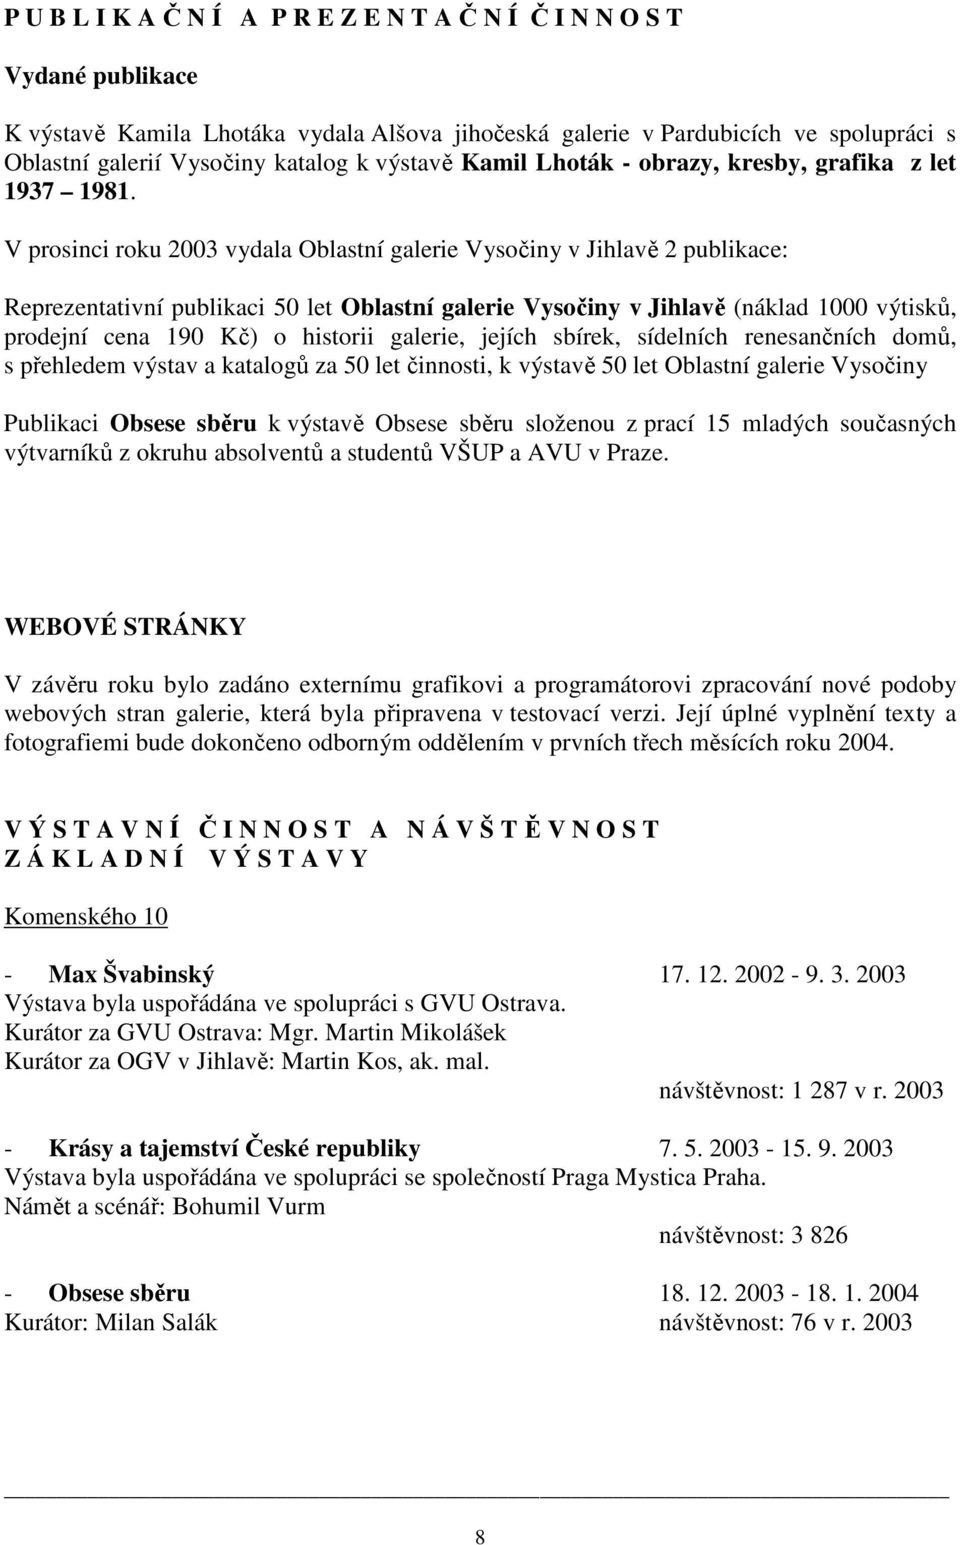 V prosinci roku 2003 vydala Oblastní galerie Vysočiny v Jihlavě 2 publikace: Reprezentativní publikaci 50 let Oblastní galerie Vysočiny v Jihlavě (náklad 1000 výtisků, prodejní cena 190 Kč) o